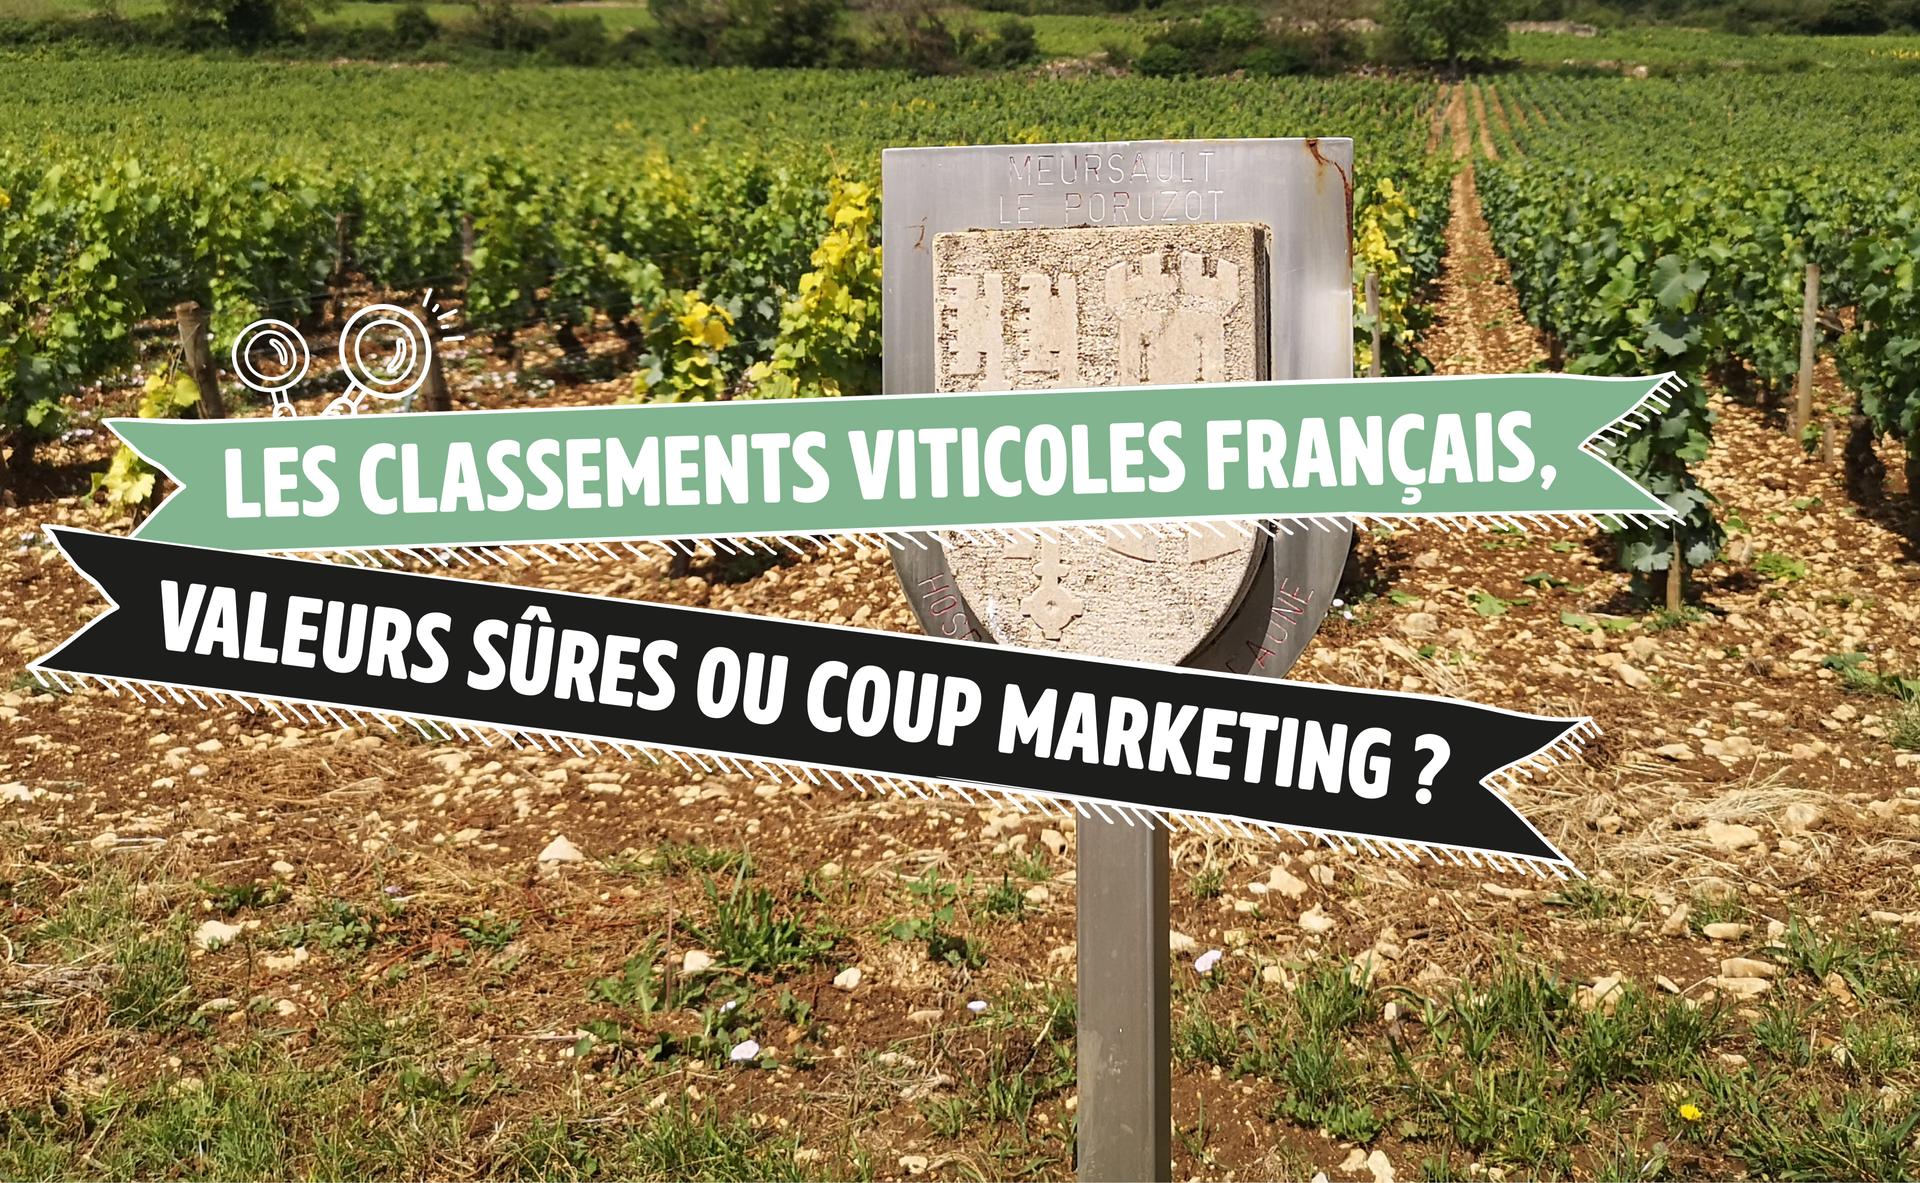 Les classements viticoles Français, valeurs sûres ou coup marketing ?